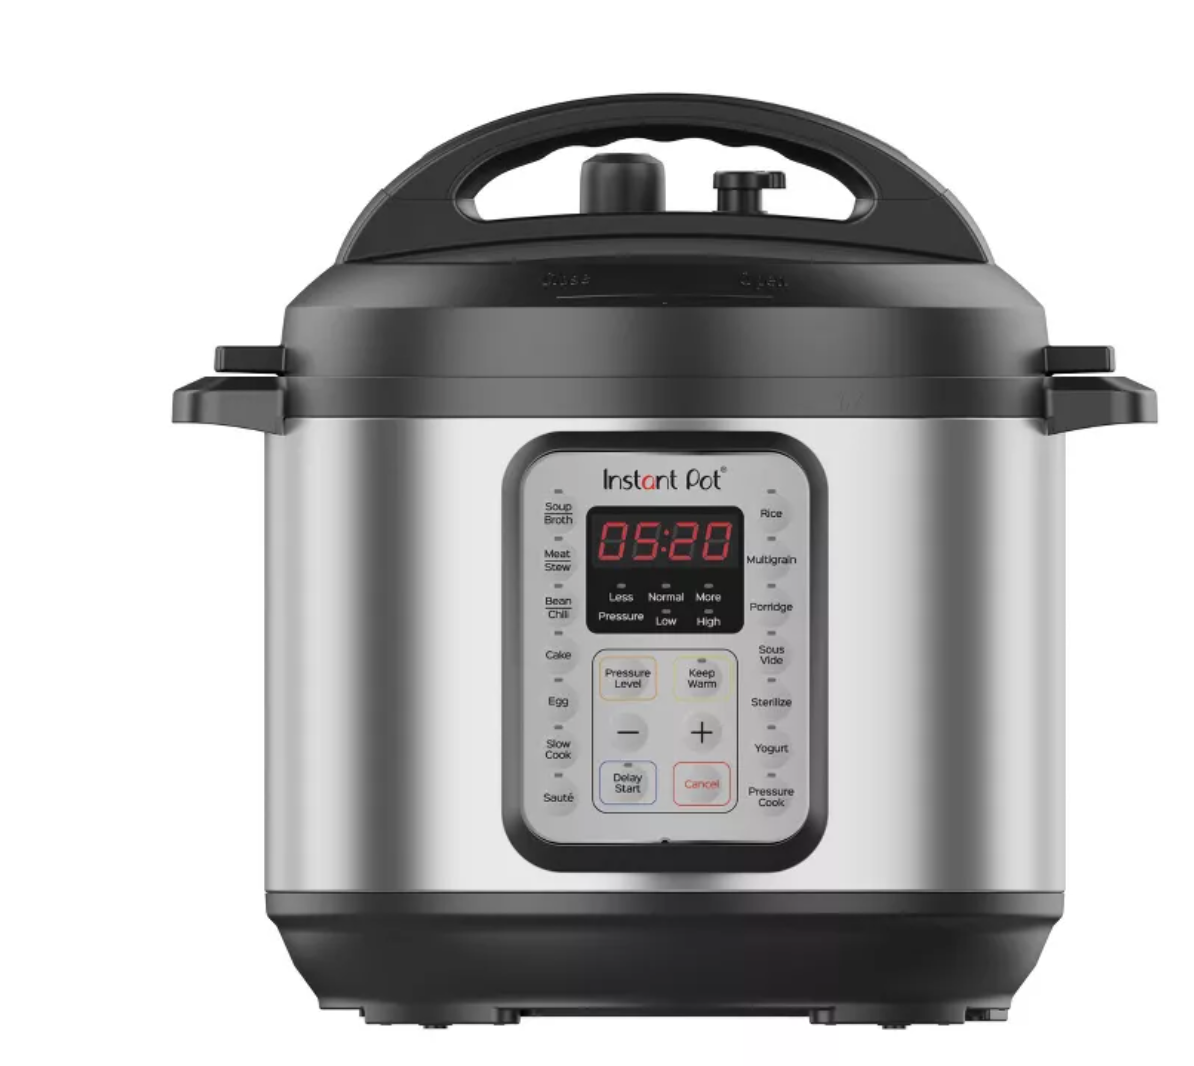 Instant Pot 6qt Pressure Cooker - $60 off